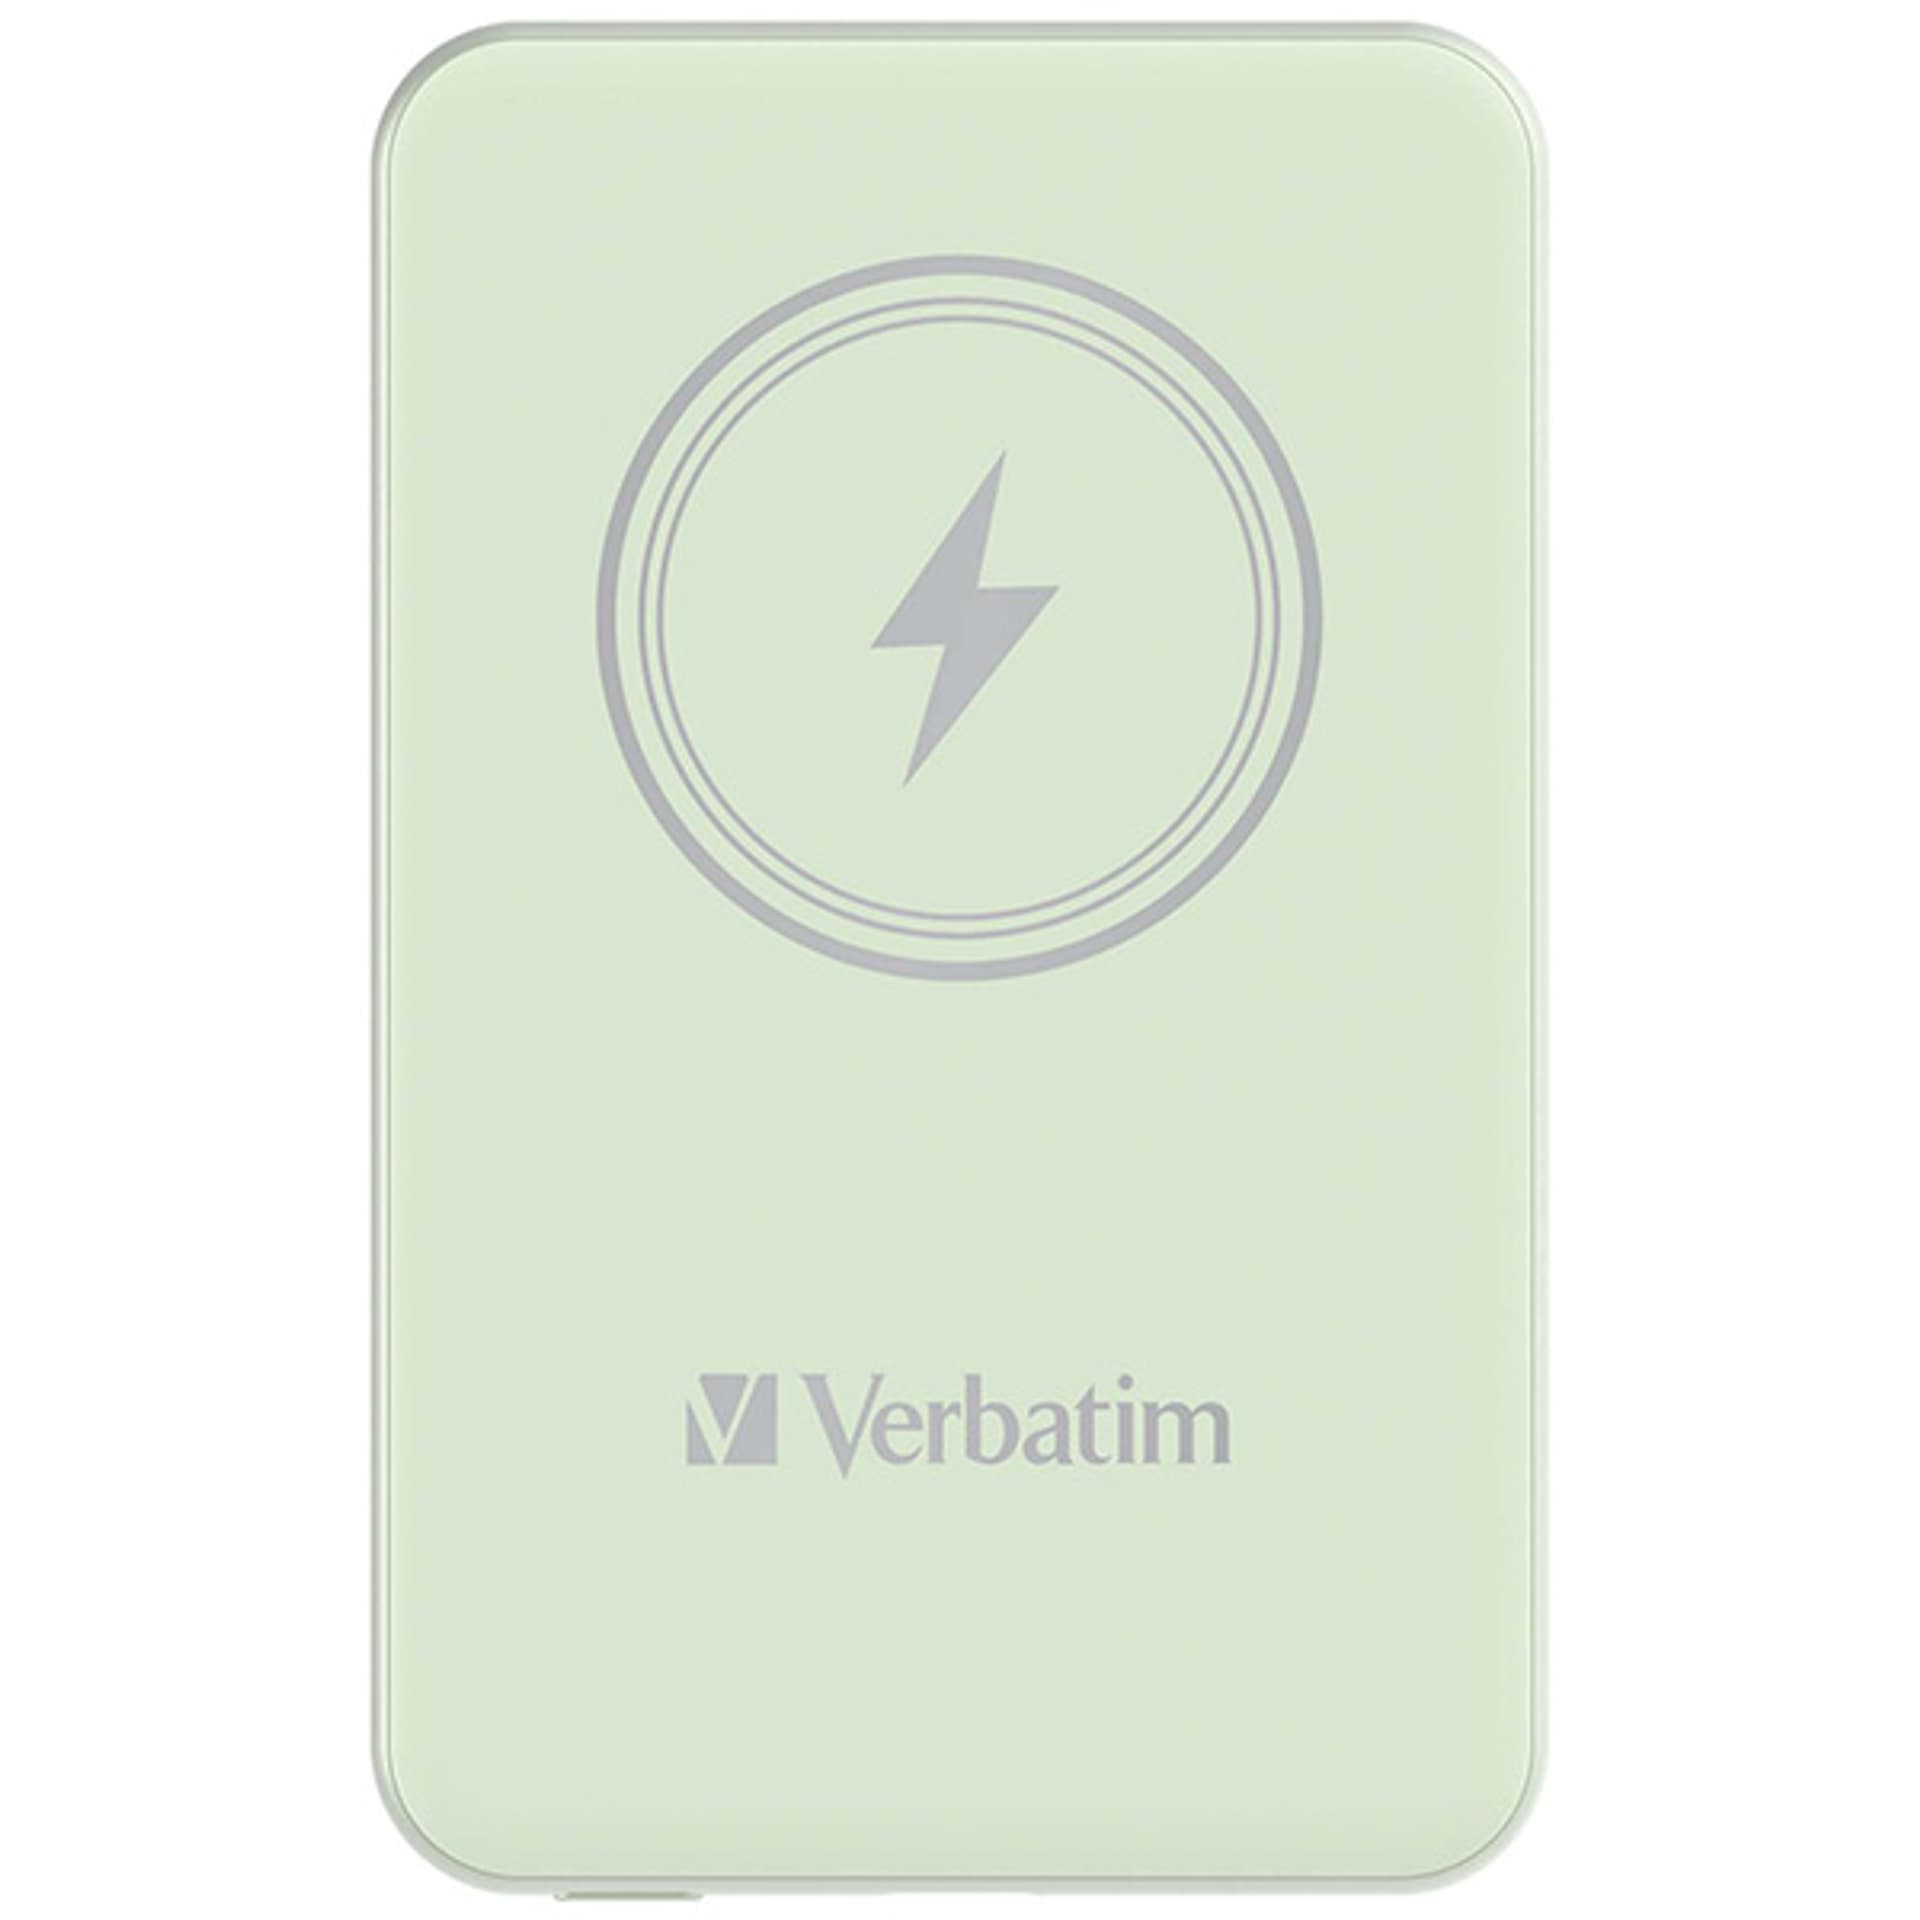 Verbatim Charge 'n' Go Magnetic Wireless Power Bank 5000mAh zielony - darmowy odbiór w 22 miastach i bezpłatny zwrot Paczkomatem aż do 15 dni